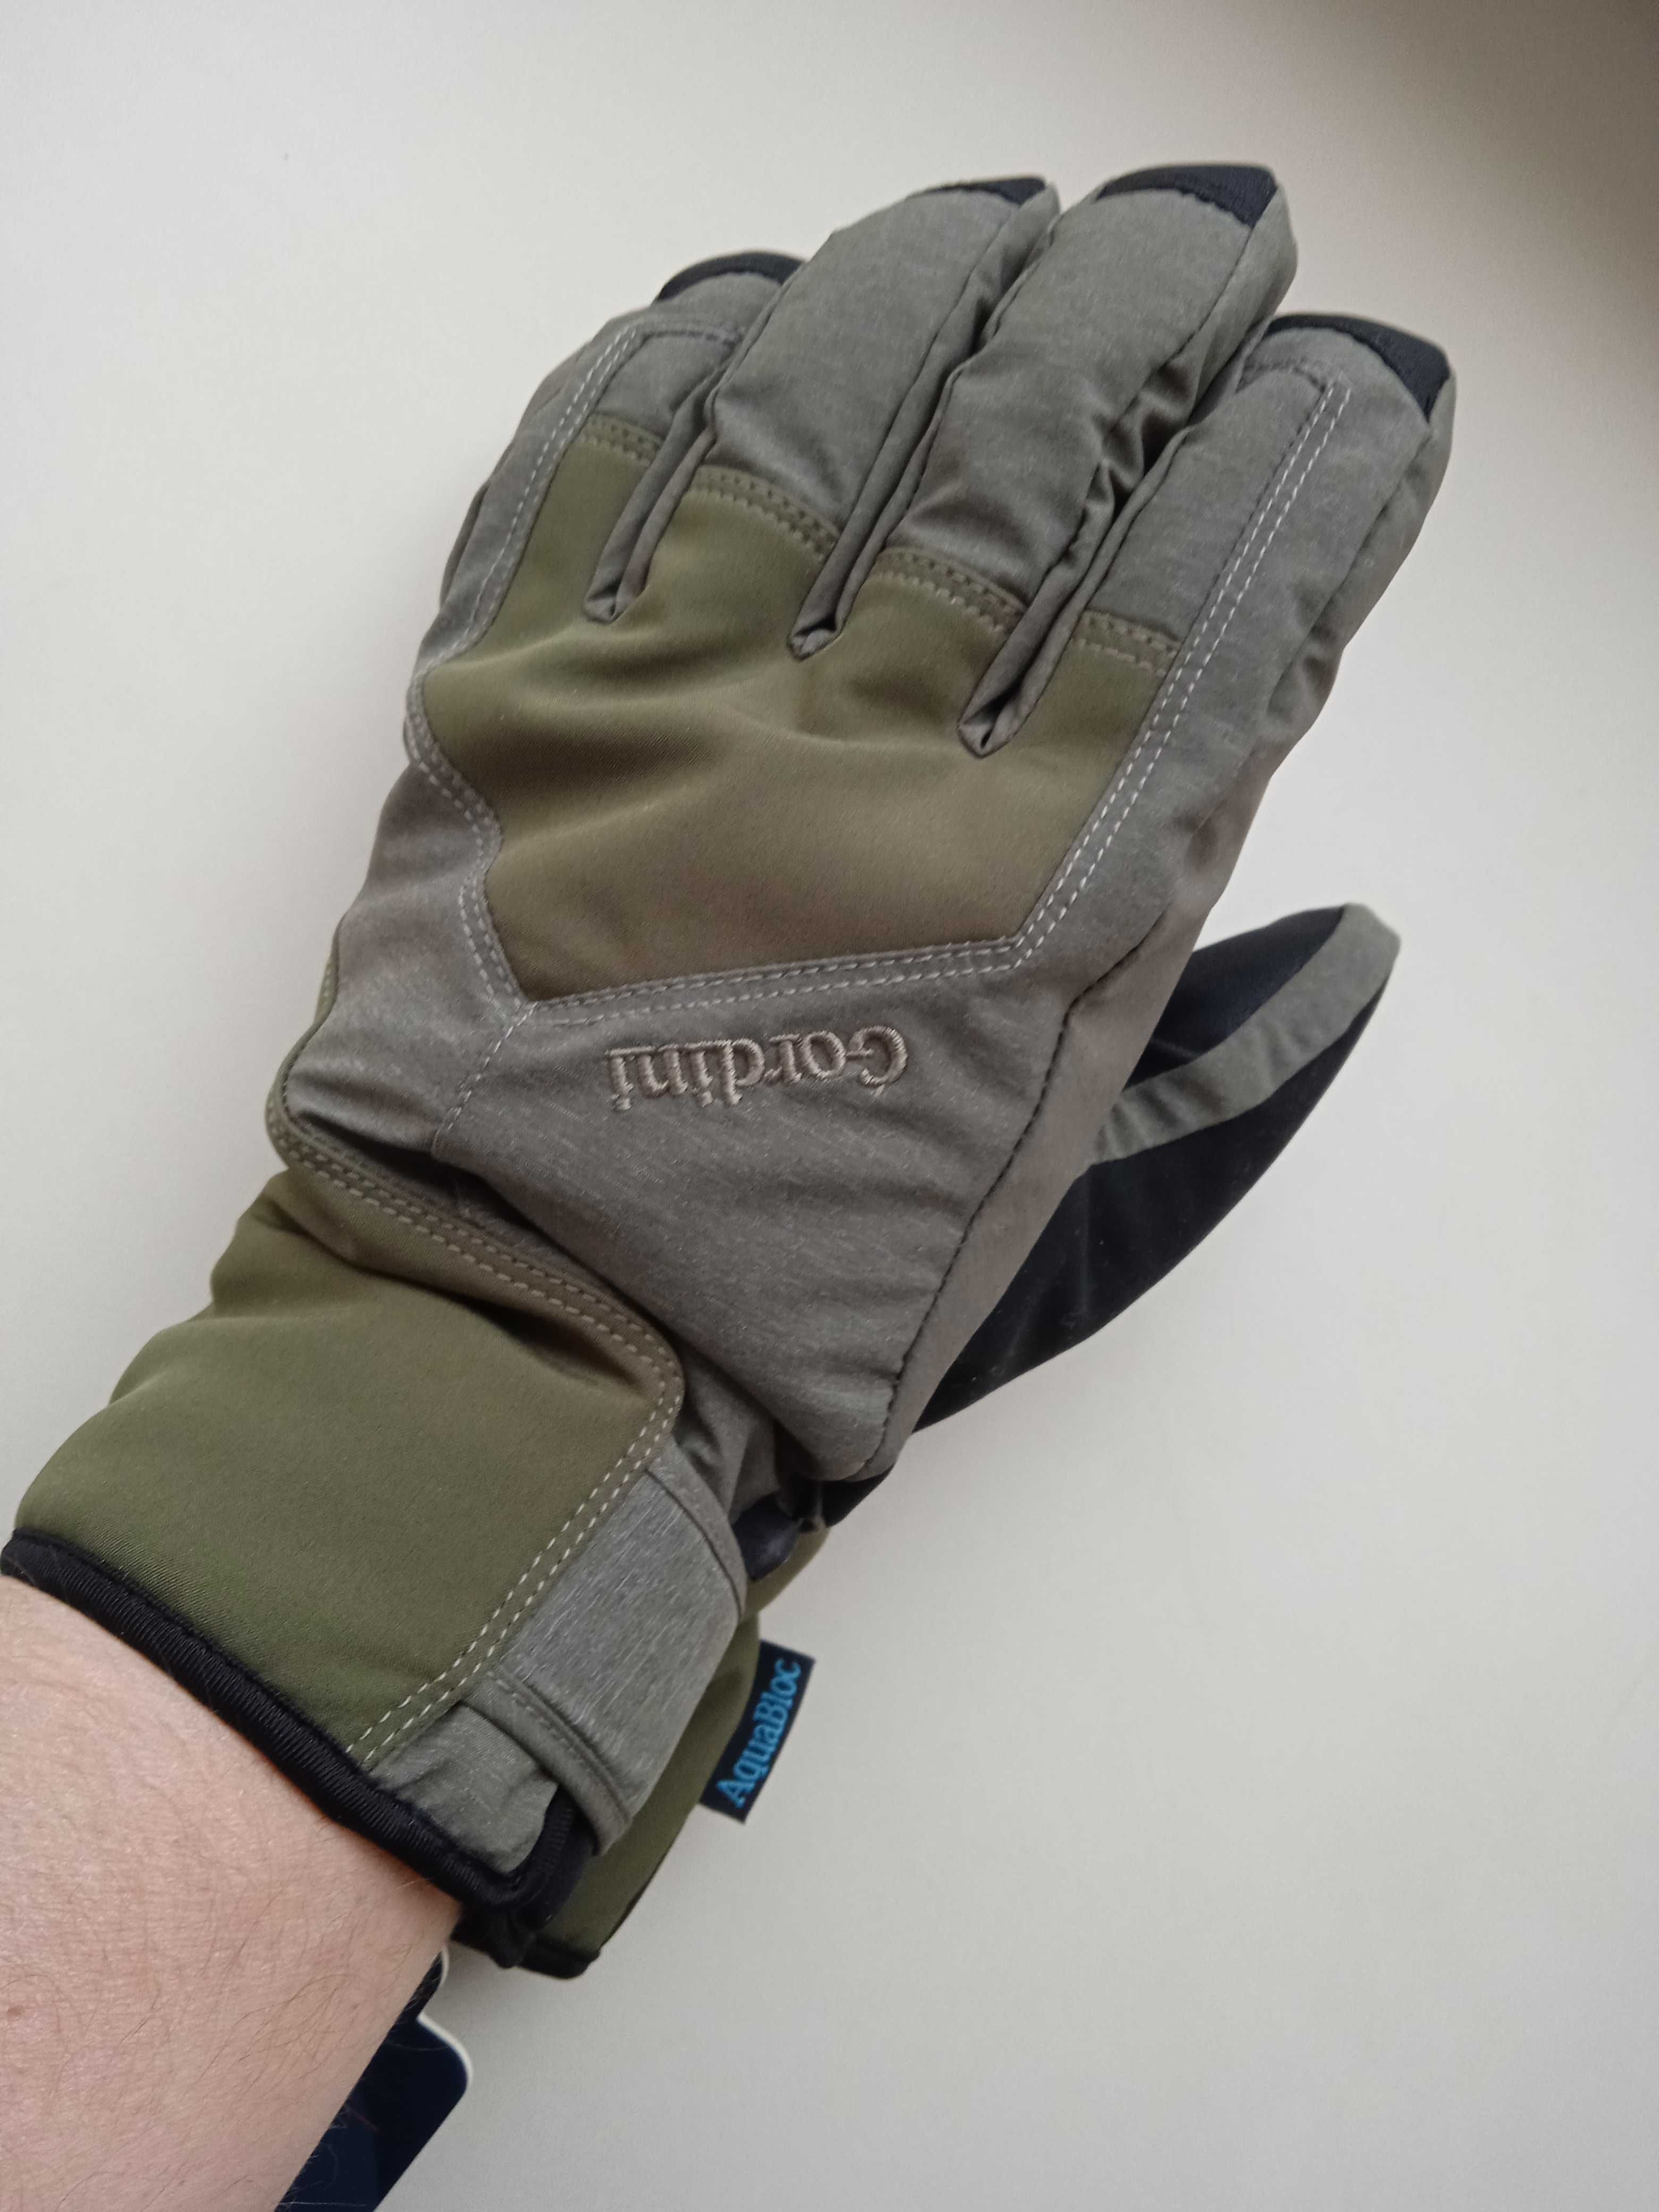 Зимние перчатки, зимові рукавички Gordini AquaBloc. З США. Оригінал